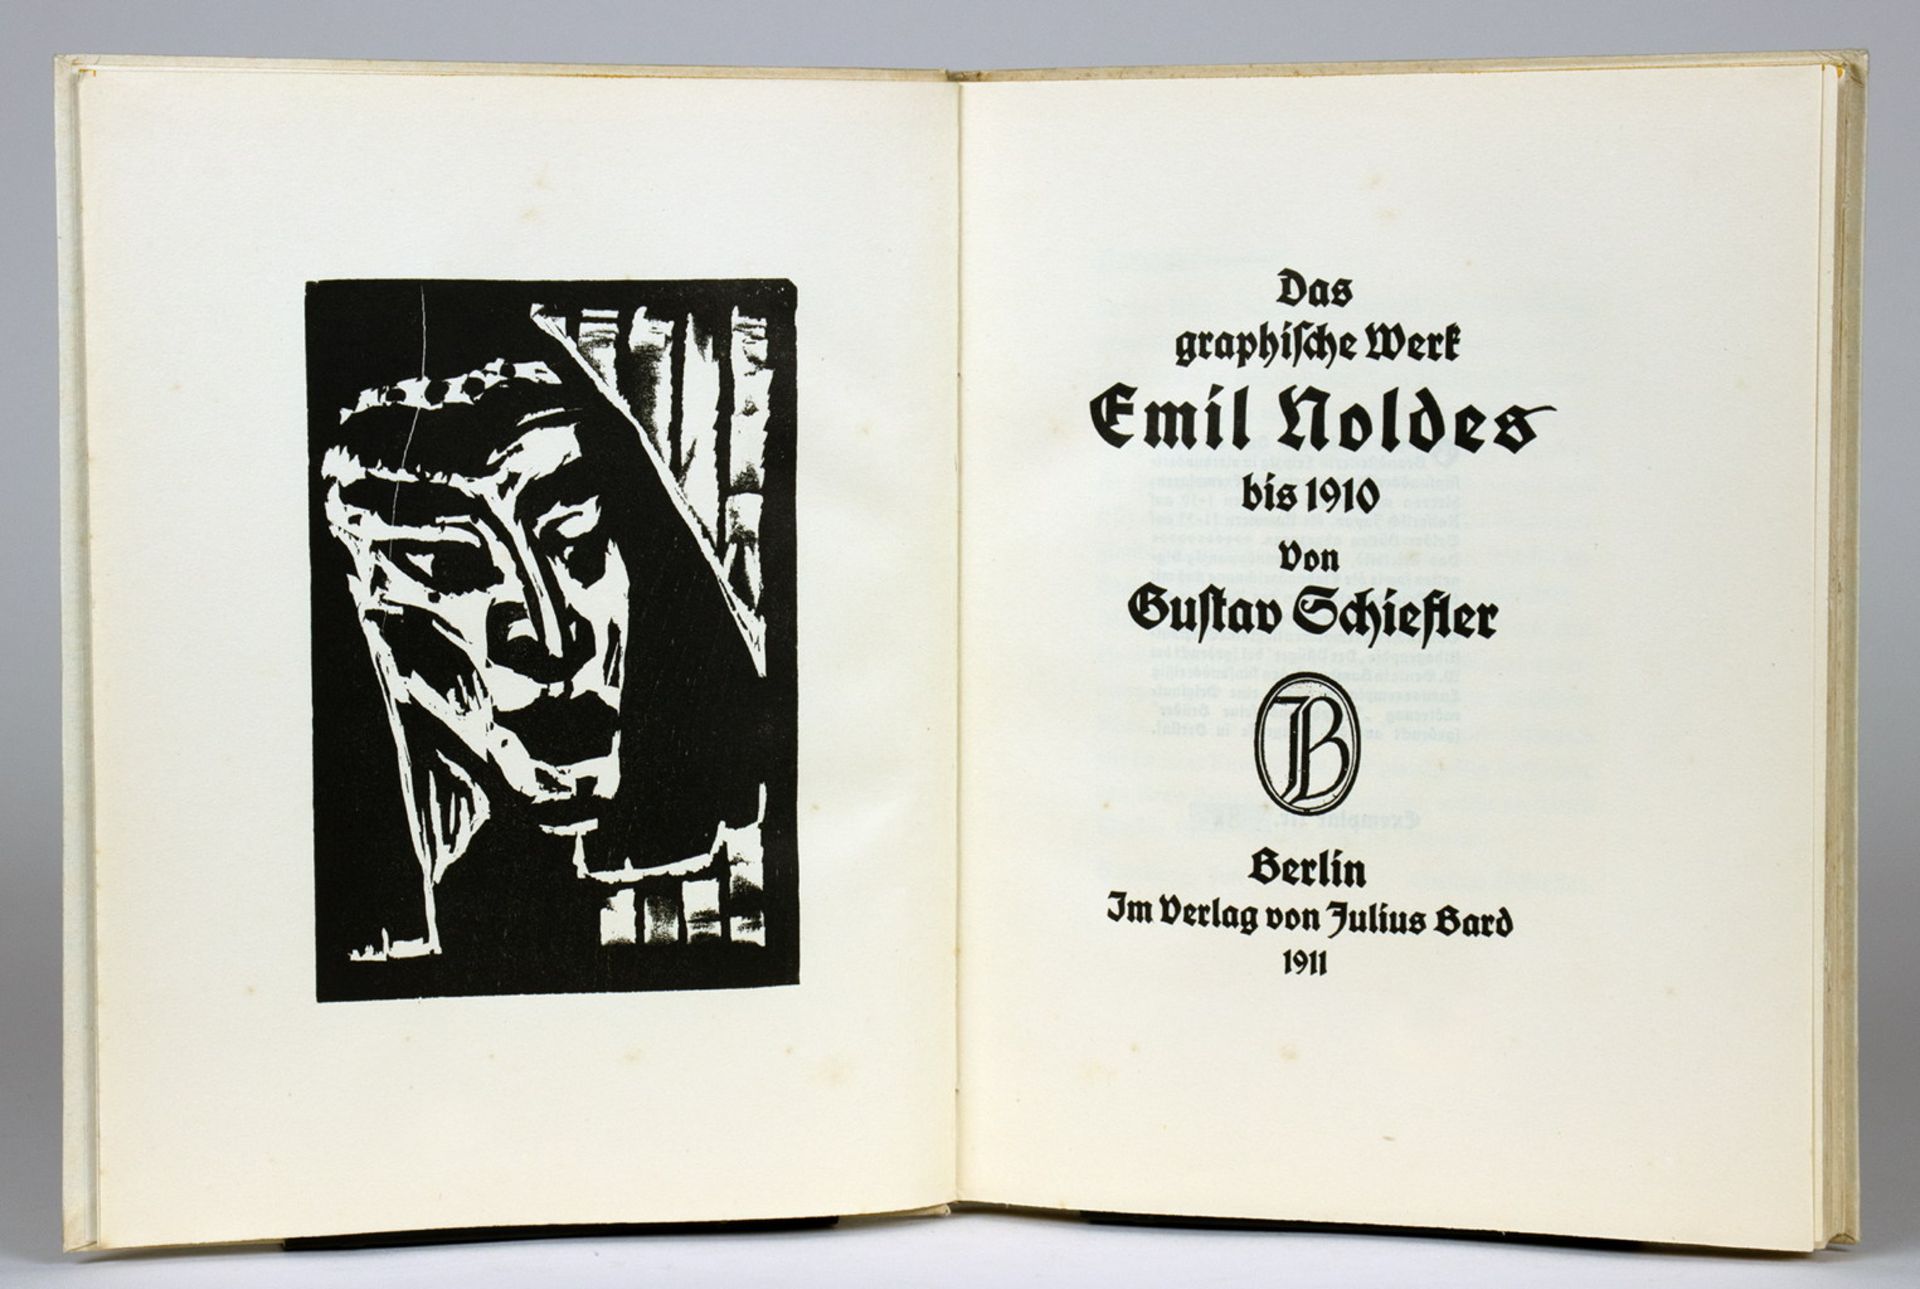 Emil Nolde - Schiefler. Das graphische Werk Emil Noldes. 1911